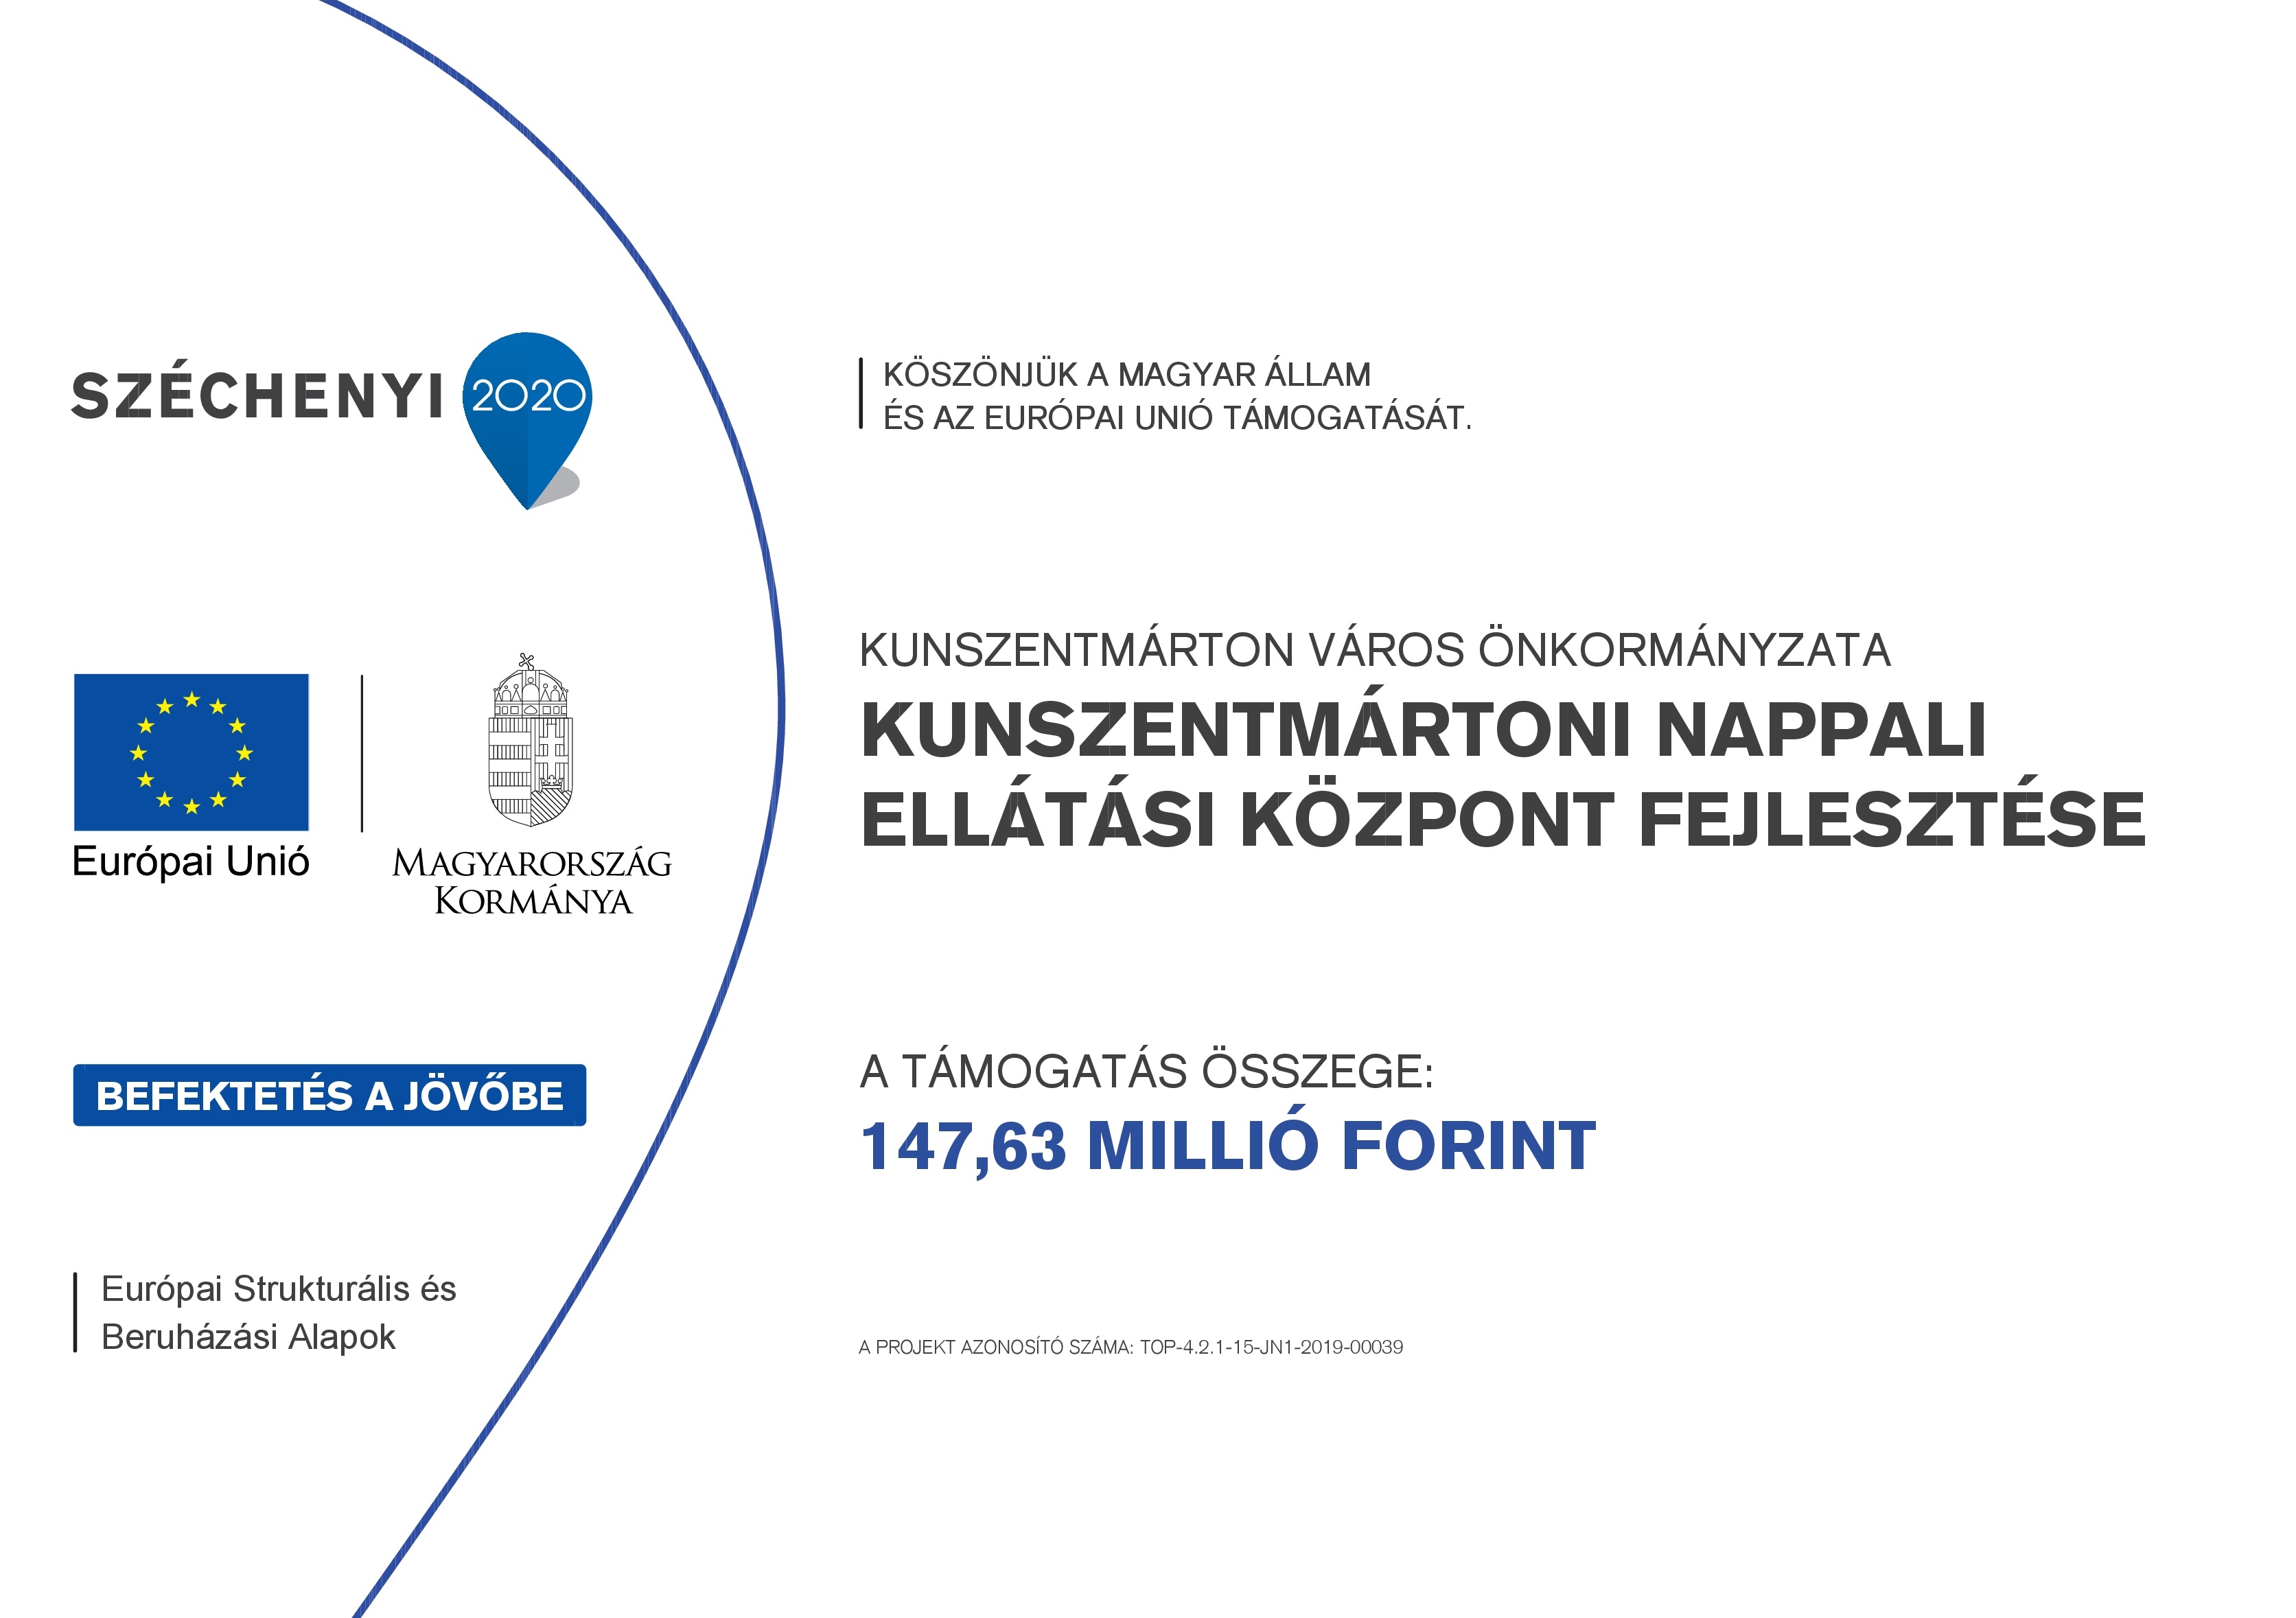 Köszönjük a Magyar Állam és az Európai Unió támogatását Kunszentmárton Város Önkormányzata Kunszentmártoni Nappali Ellátási Központ Fejlesztése, a támogatás összege 147,63 millió Ft, azonosító TOP-4.2.1-15-JN1-2019-00039